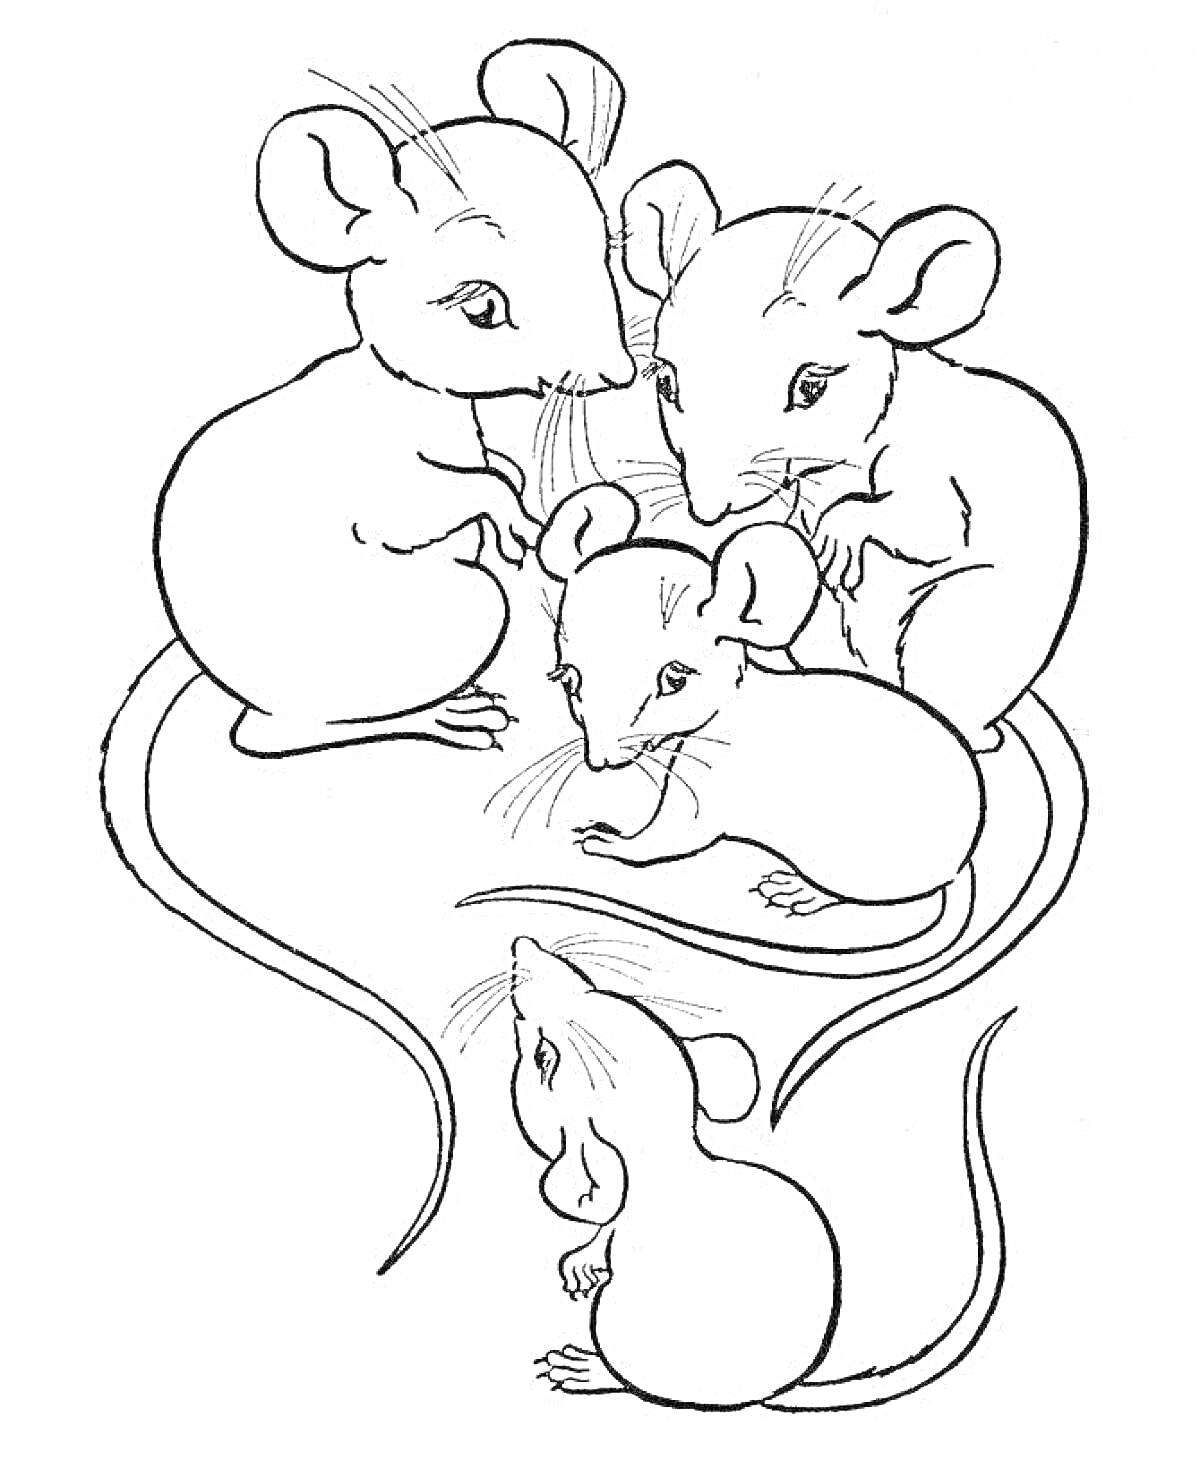 Семья из четырех мышек